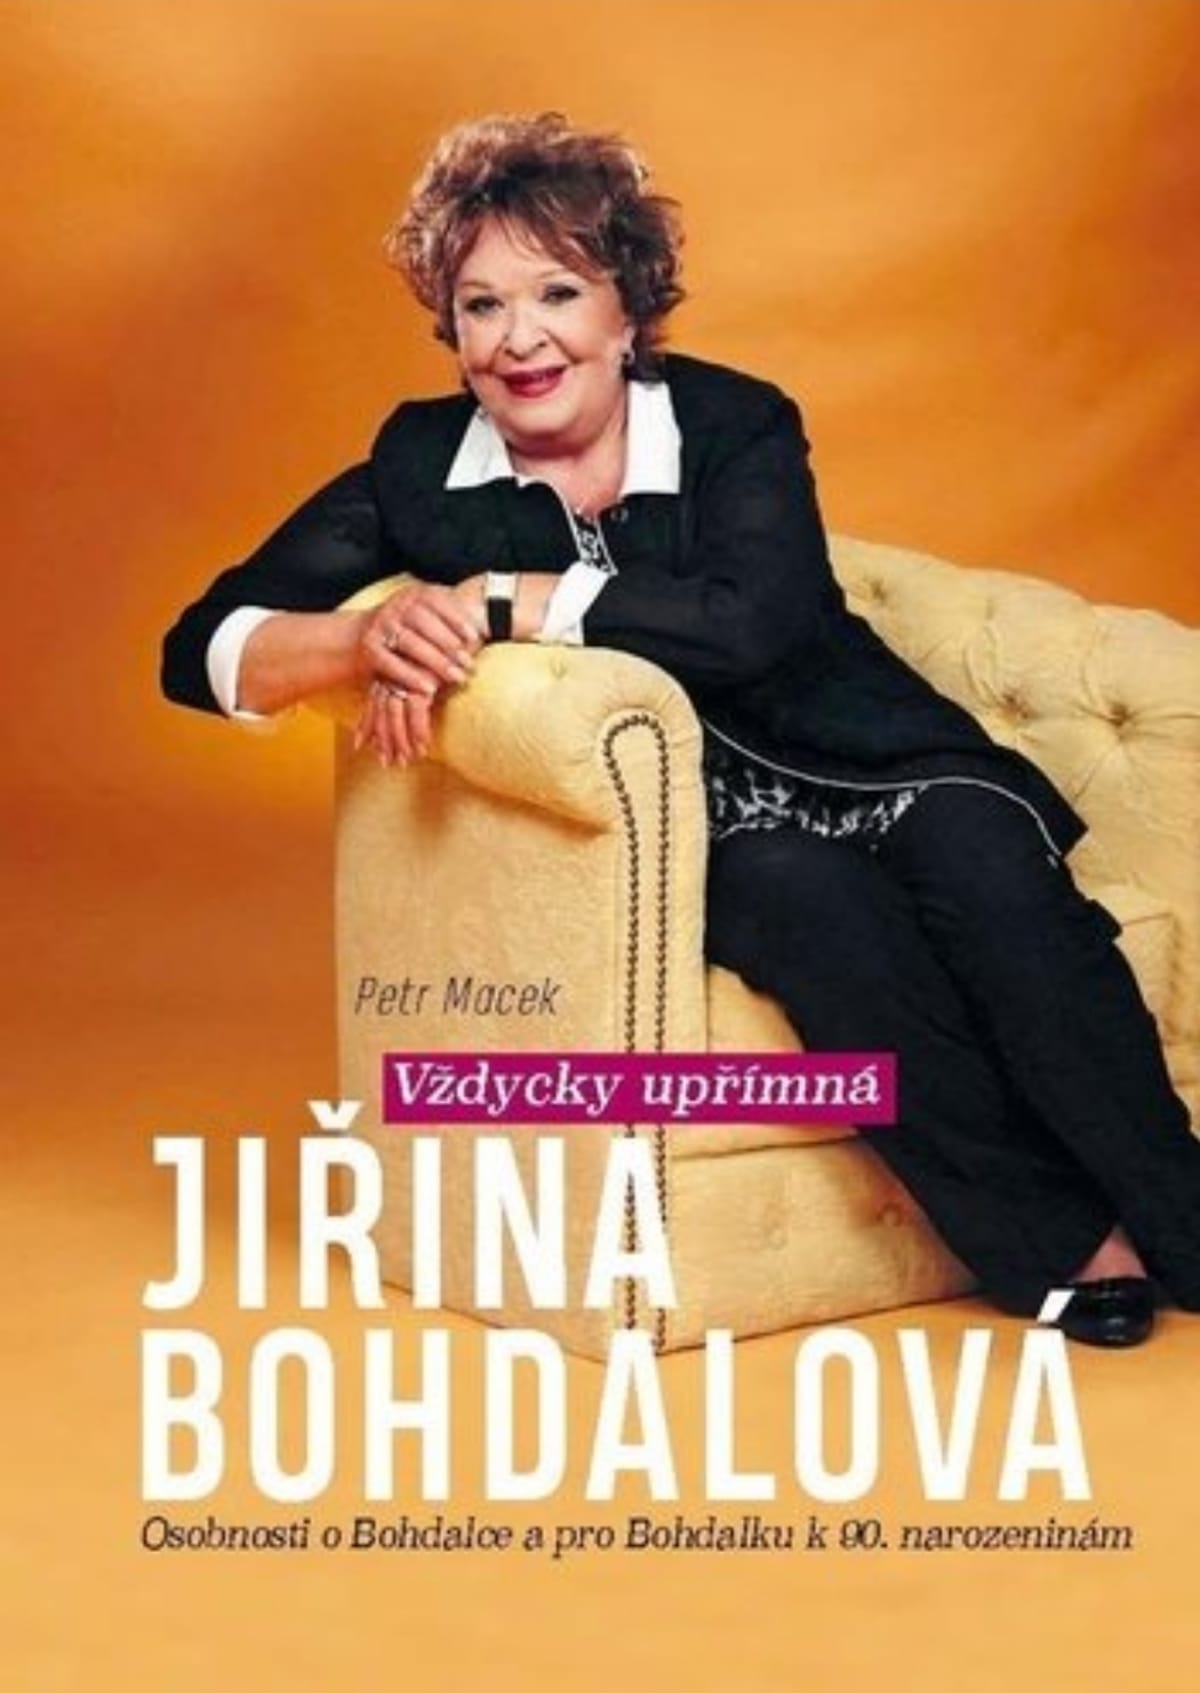 Soutěžte se Showtimem o knihu Vždycky upřímná Jiřina Bohdalová